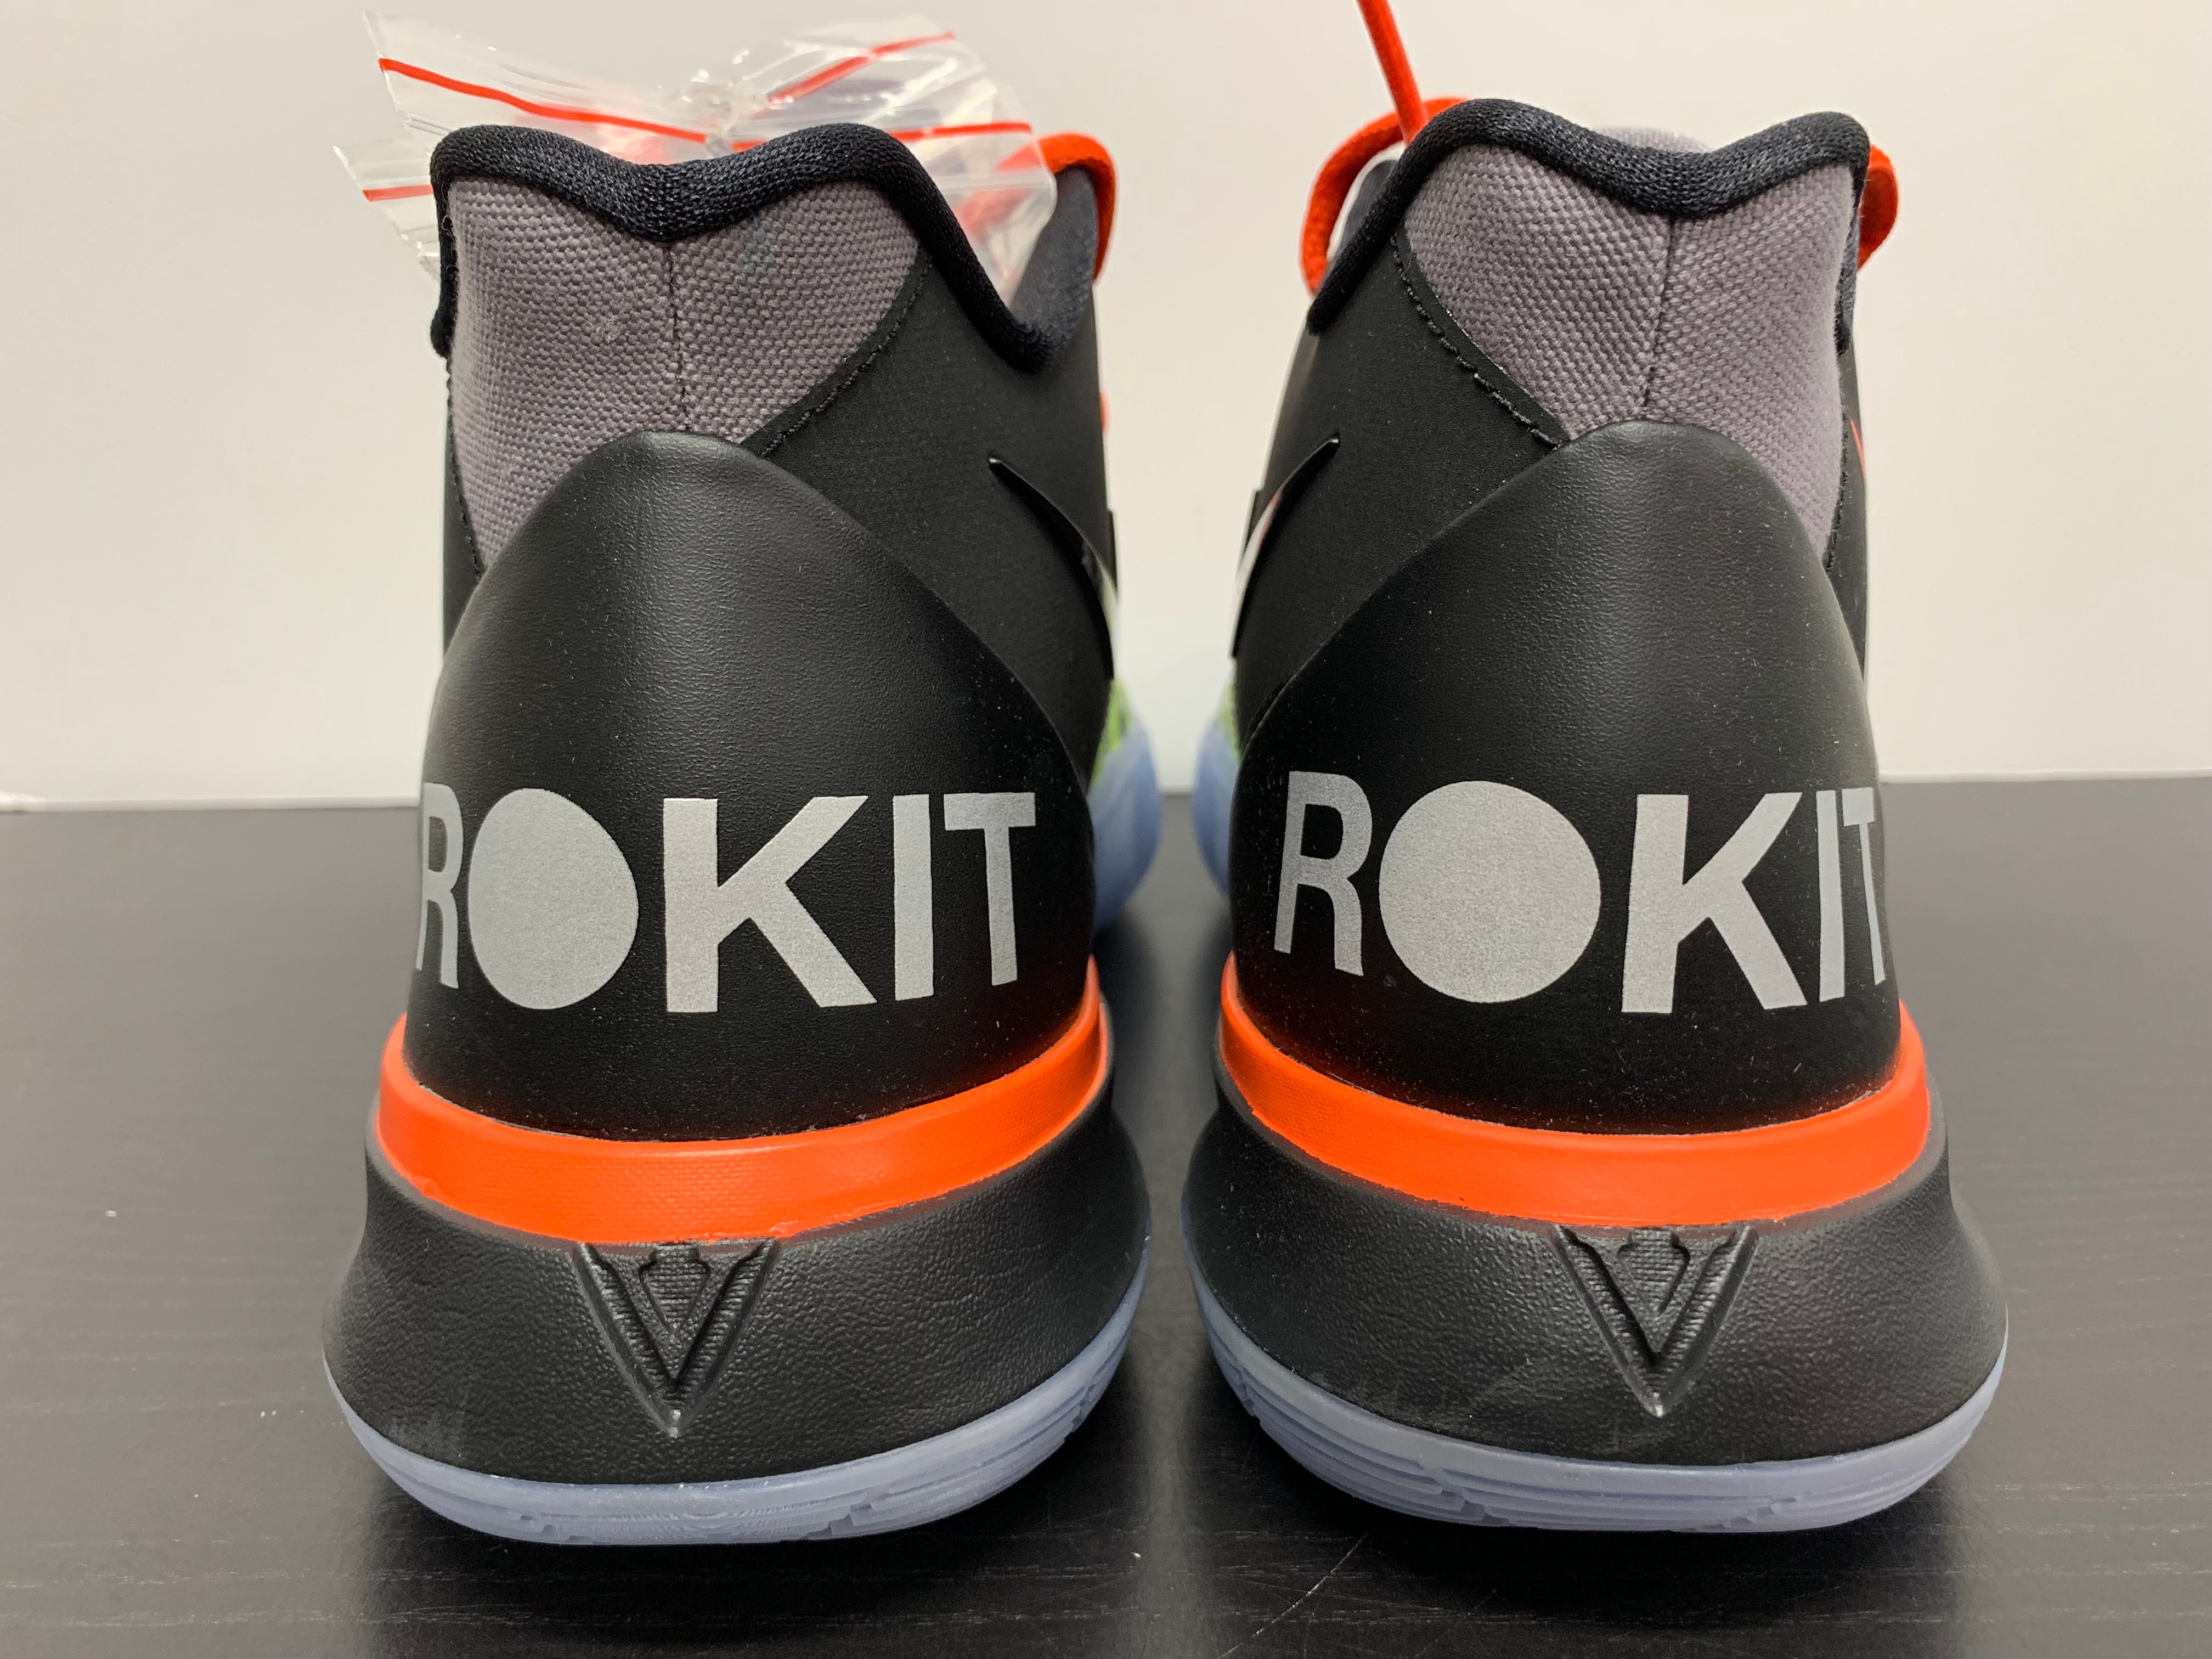 Nike Kyrie 5 BE TRUE Men 's Fashion Footwear Sneakers on